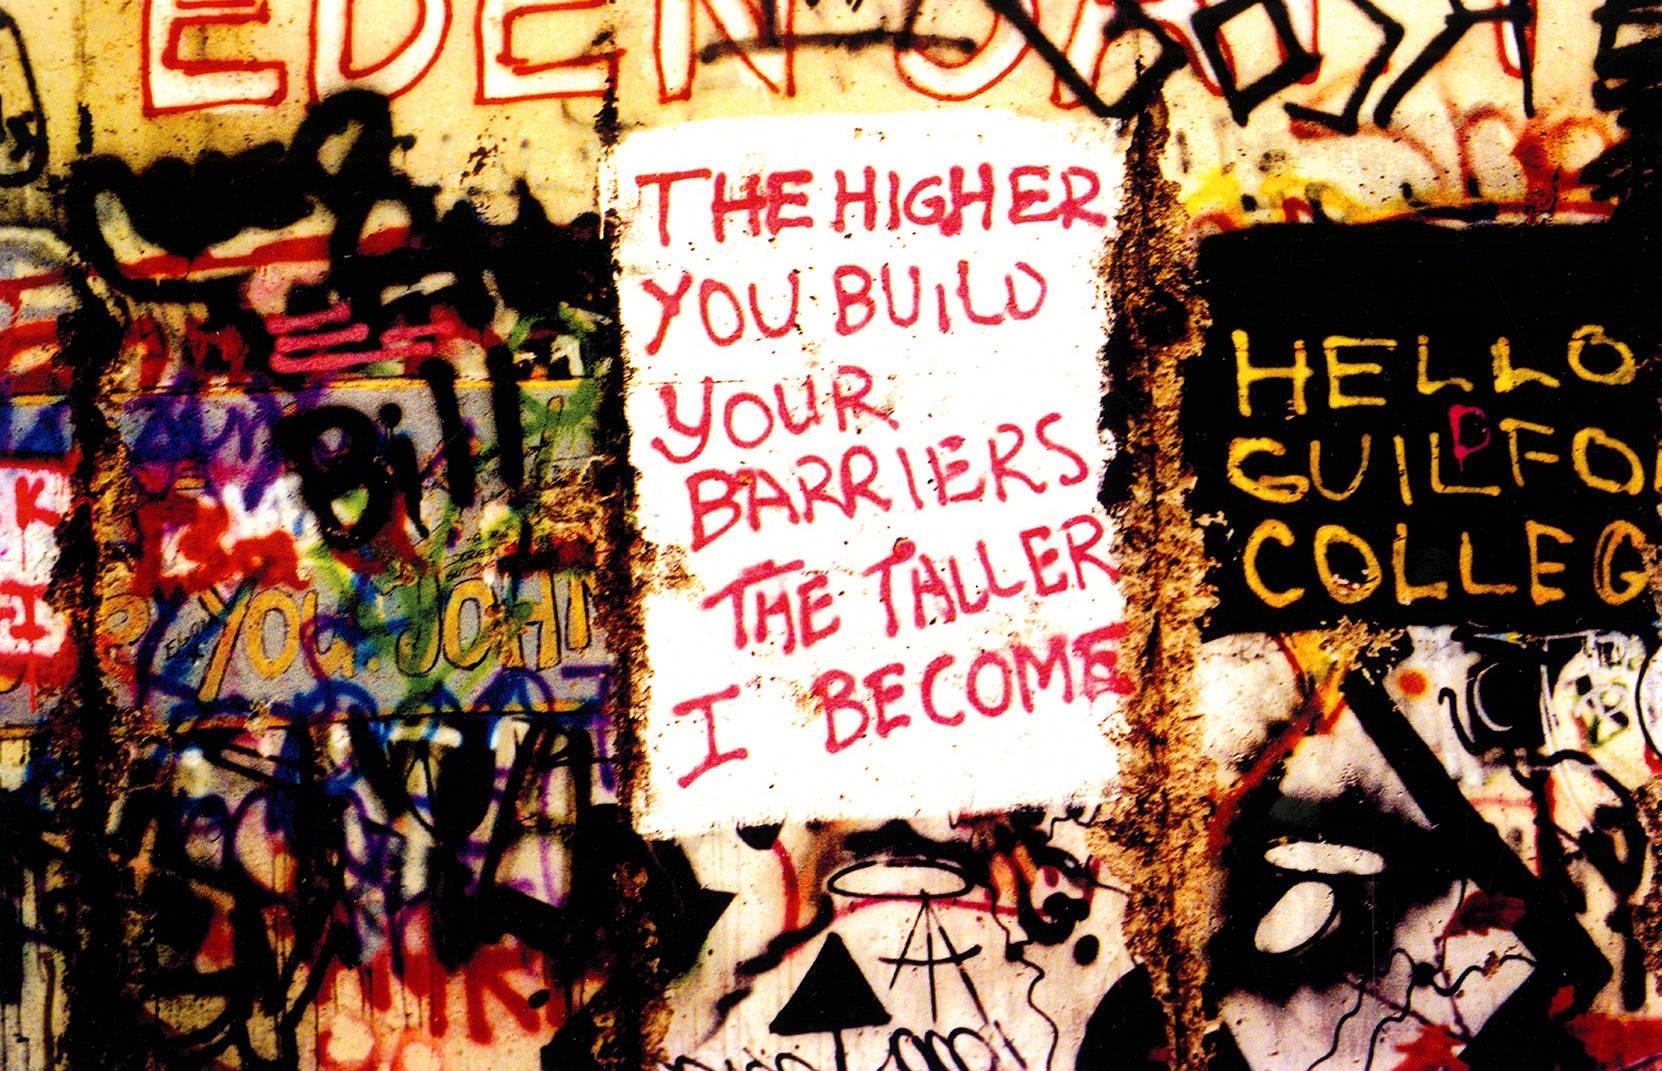 "Je höher ihr eure Barrieren baut, desto höher werde ich"
Die Berliner Mauer, 1989, von der legendären Fotojournalistin Leni Sinclair - einer bedeutenden Künstlerin der Kresge Foundation (siehe The Guardian UK, 28. Januar 2016) und legendären